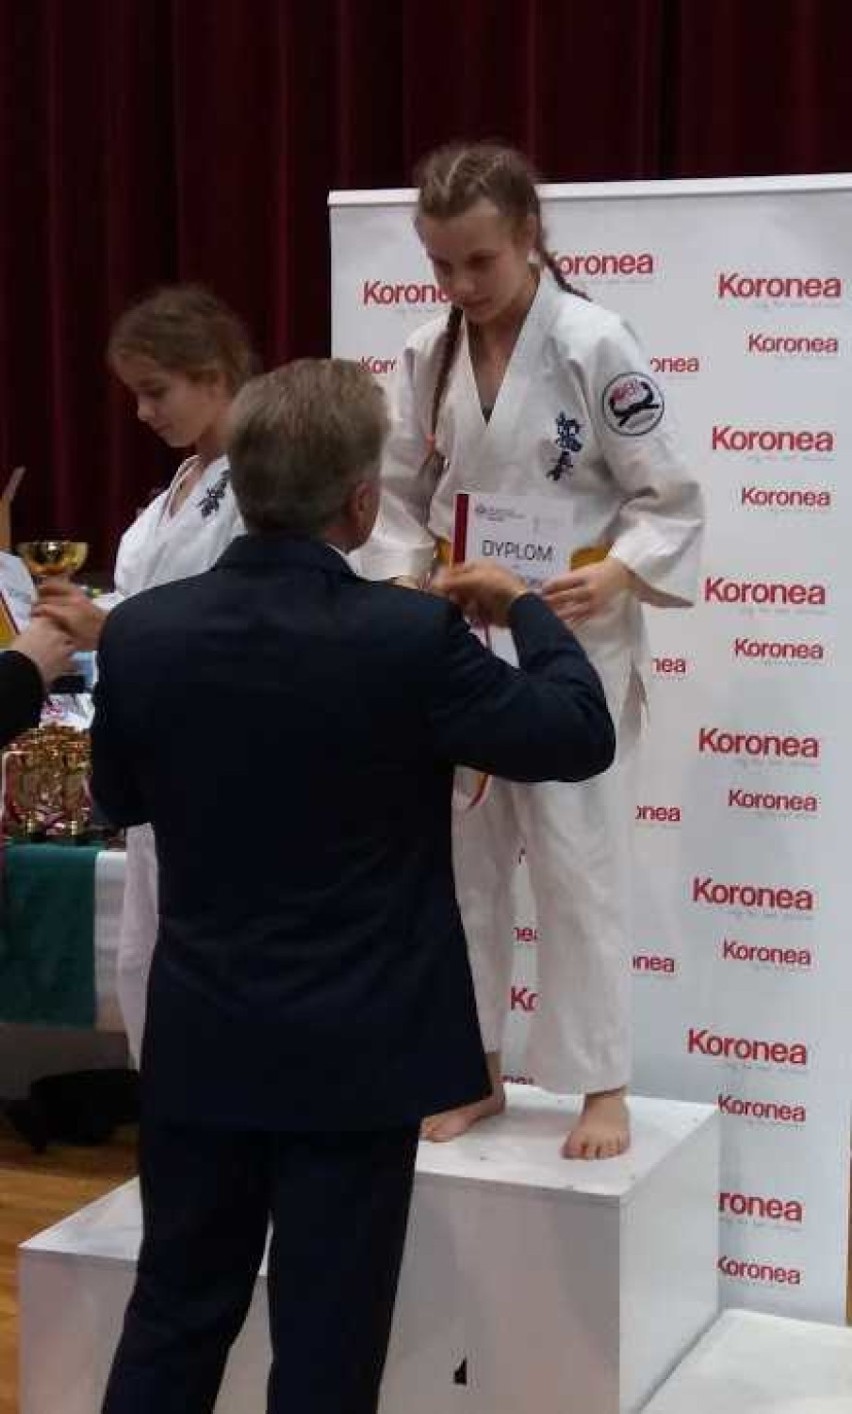 Udany wyjazd do Kielc wałbrzyskich karateków z UKKS OBI